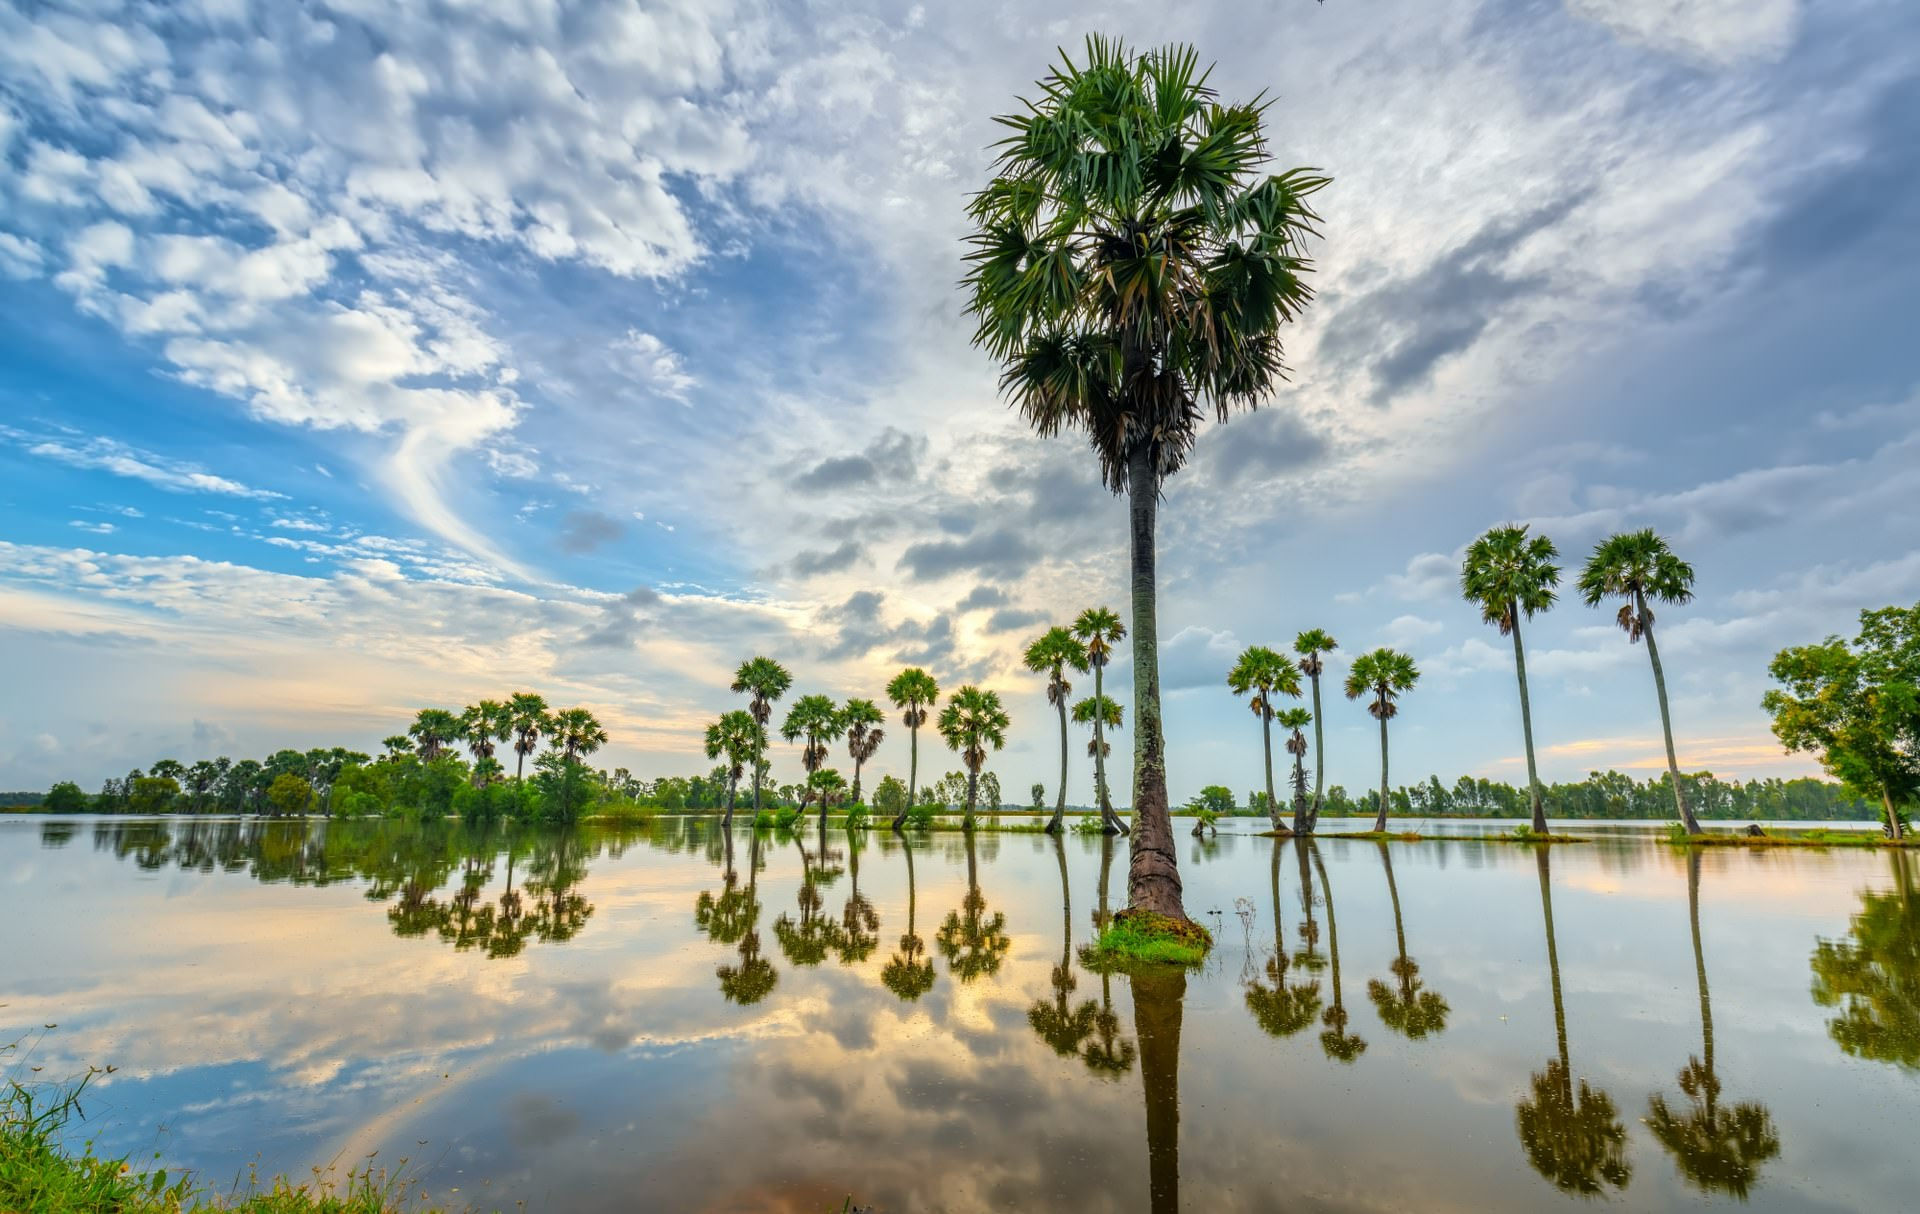 Tờ báo Anh khẳng định phải có lý do nào đó thì mới có tới 15 triệu du khách quốc tế đến Việt Nam trong năm 2018. Và những bức ảnh đẹp này đã cho thấy phần nào vẻ đẹp thiên nhiên gây choáng ngợp của Việt Nam. Trong ảnh là cảnh bình minh ở vùng đồng bằng sông Cửu Long qua ống kính của nhiếp ảnh gia Huy Thoai.